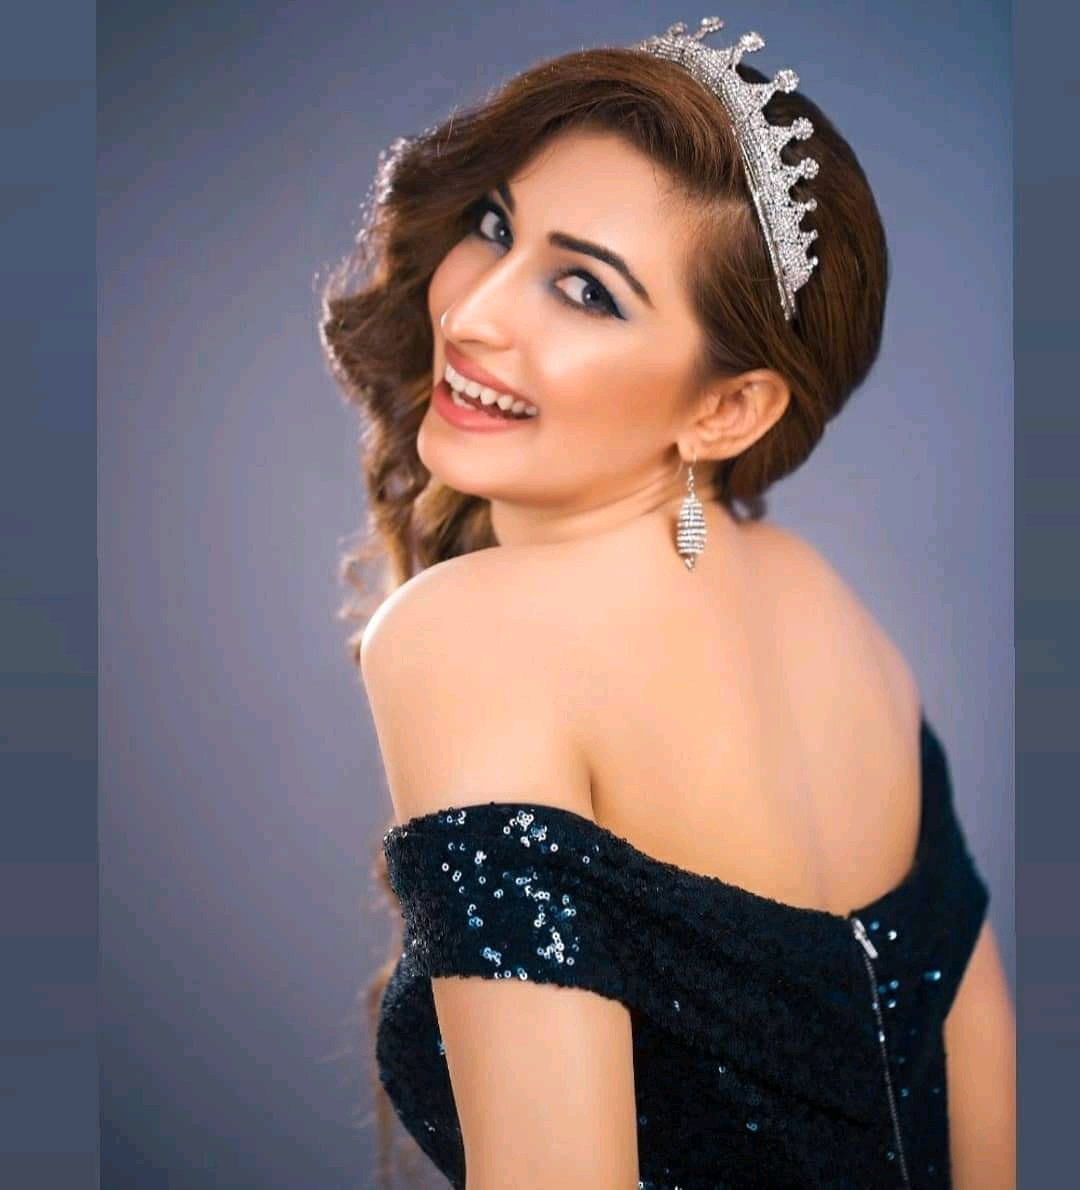 世界小姐2020巴基斯坦赛区冠军,五官精致,低眸一笑,让人沦陷